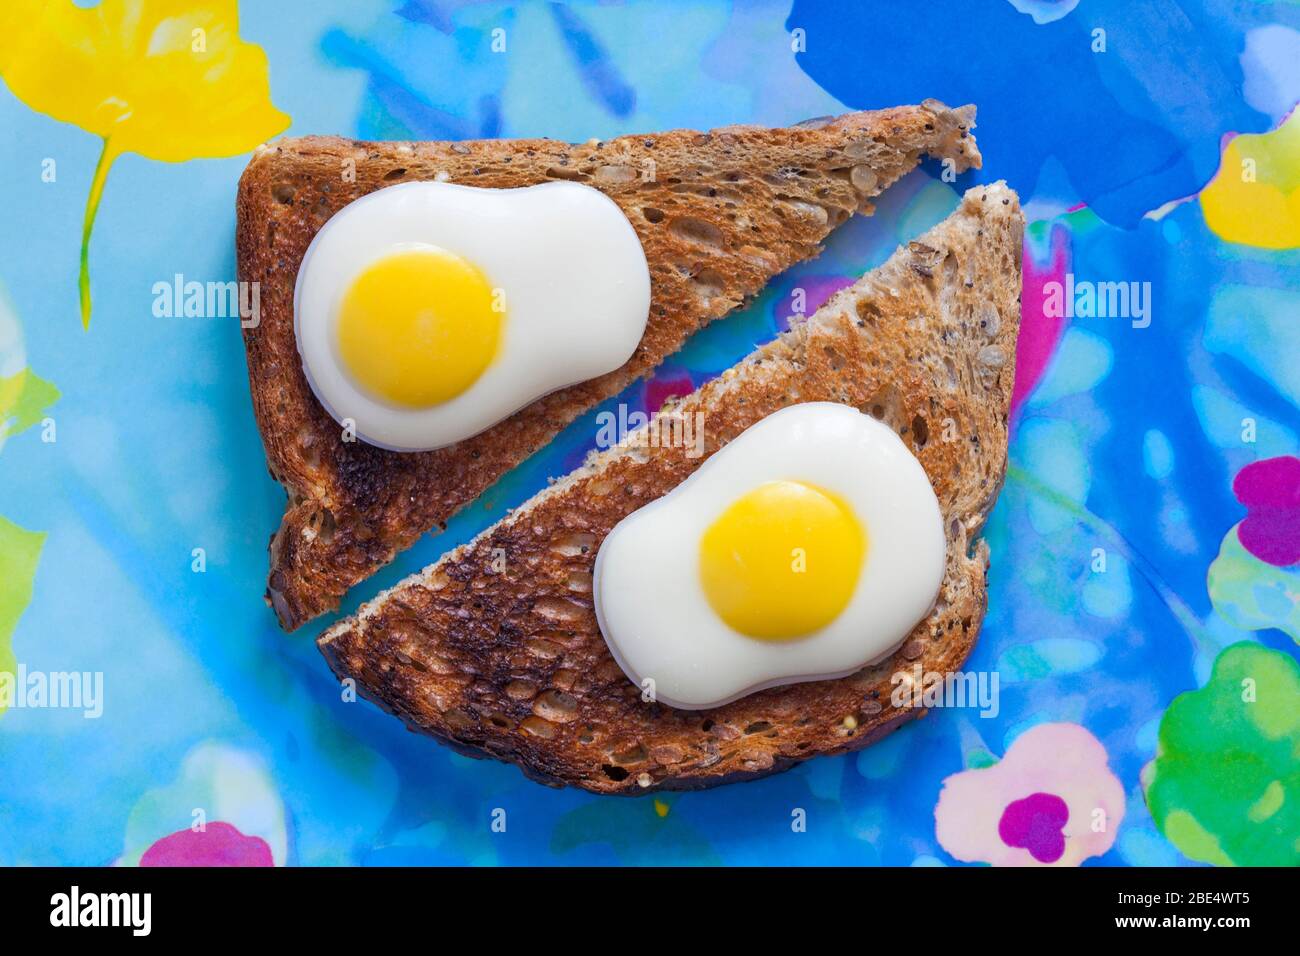 M&S uova fritte decorate con cioccolato bianco solido pronto per Pasqua, con toast su piatto colorato - uova su toast - uova su toast Concept - uova da colazione Foto Stock